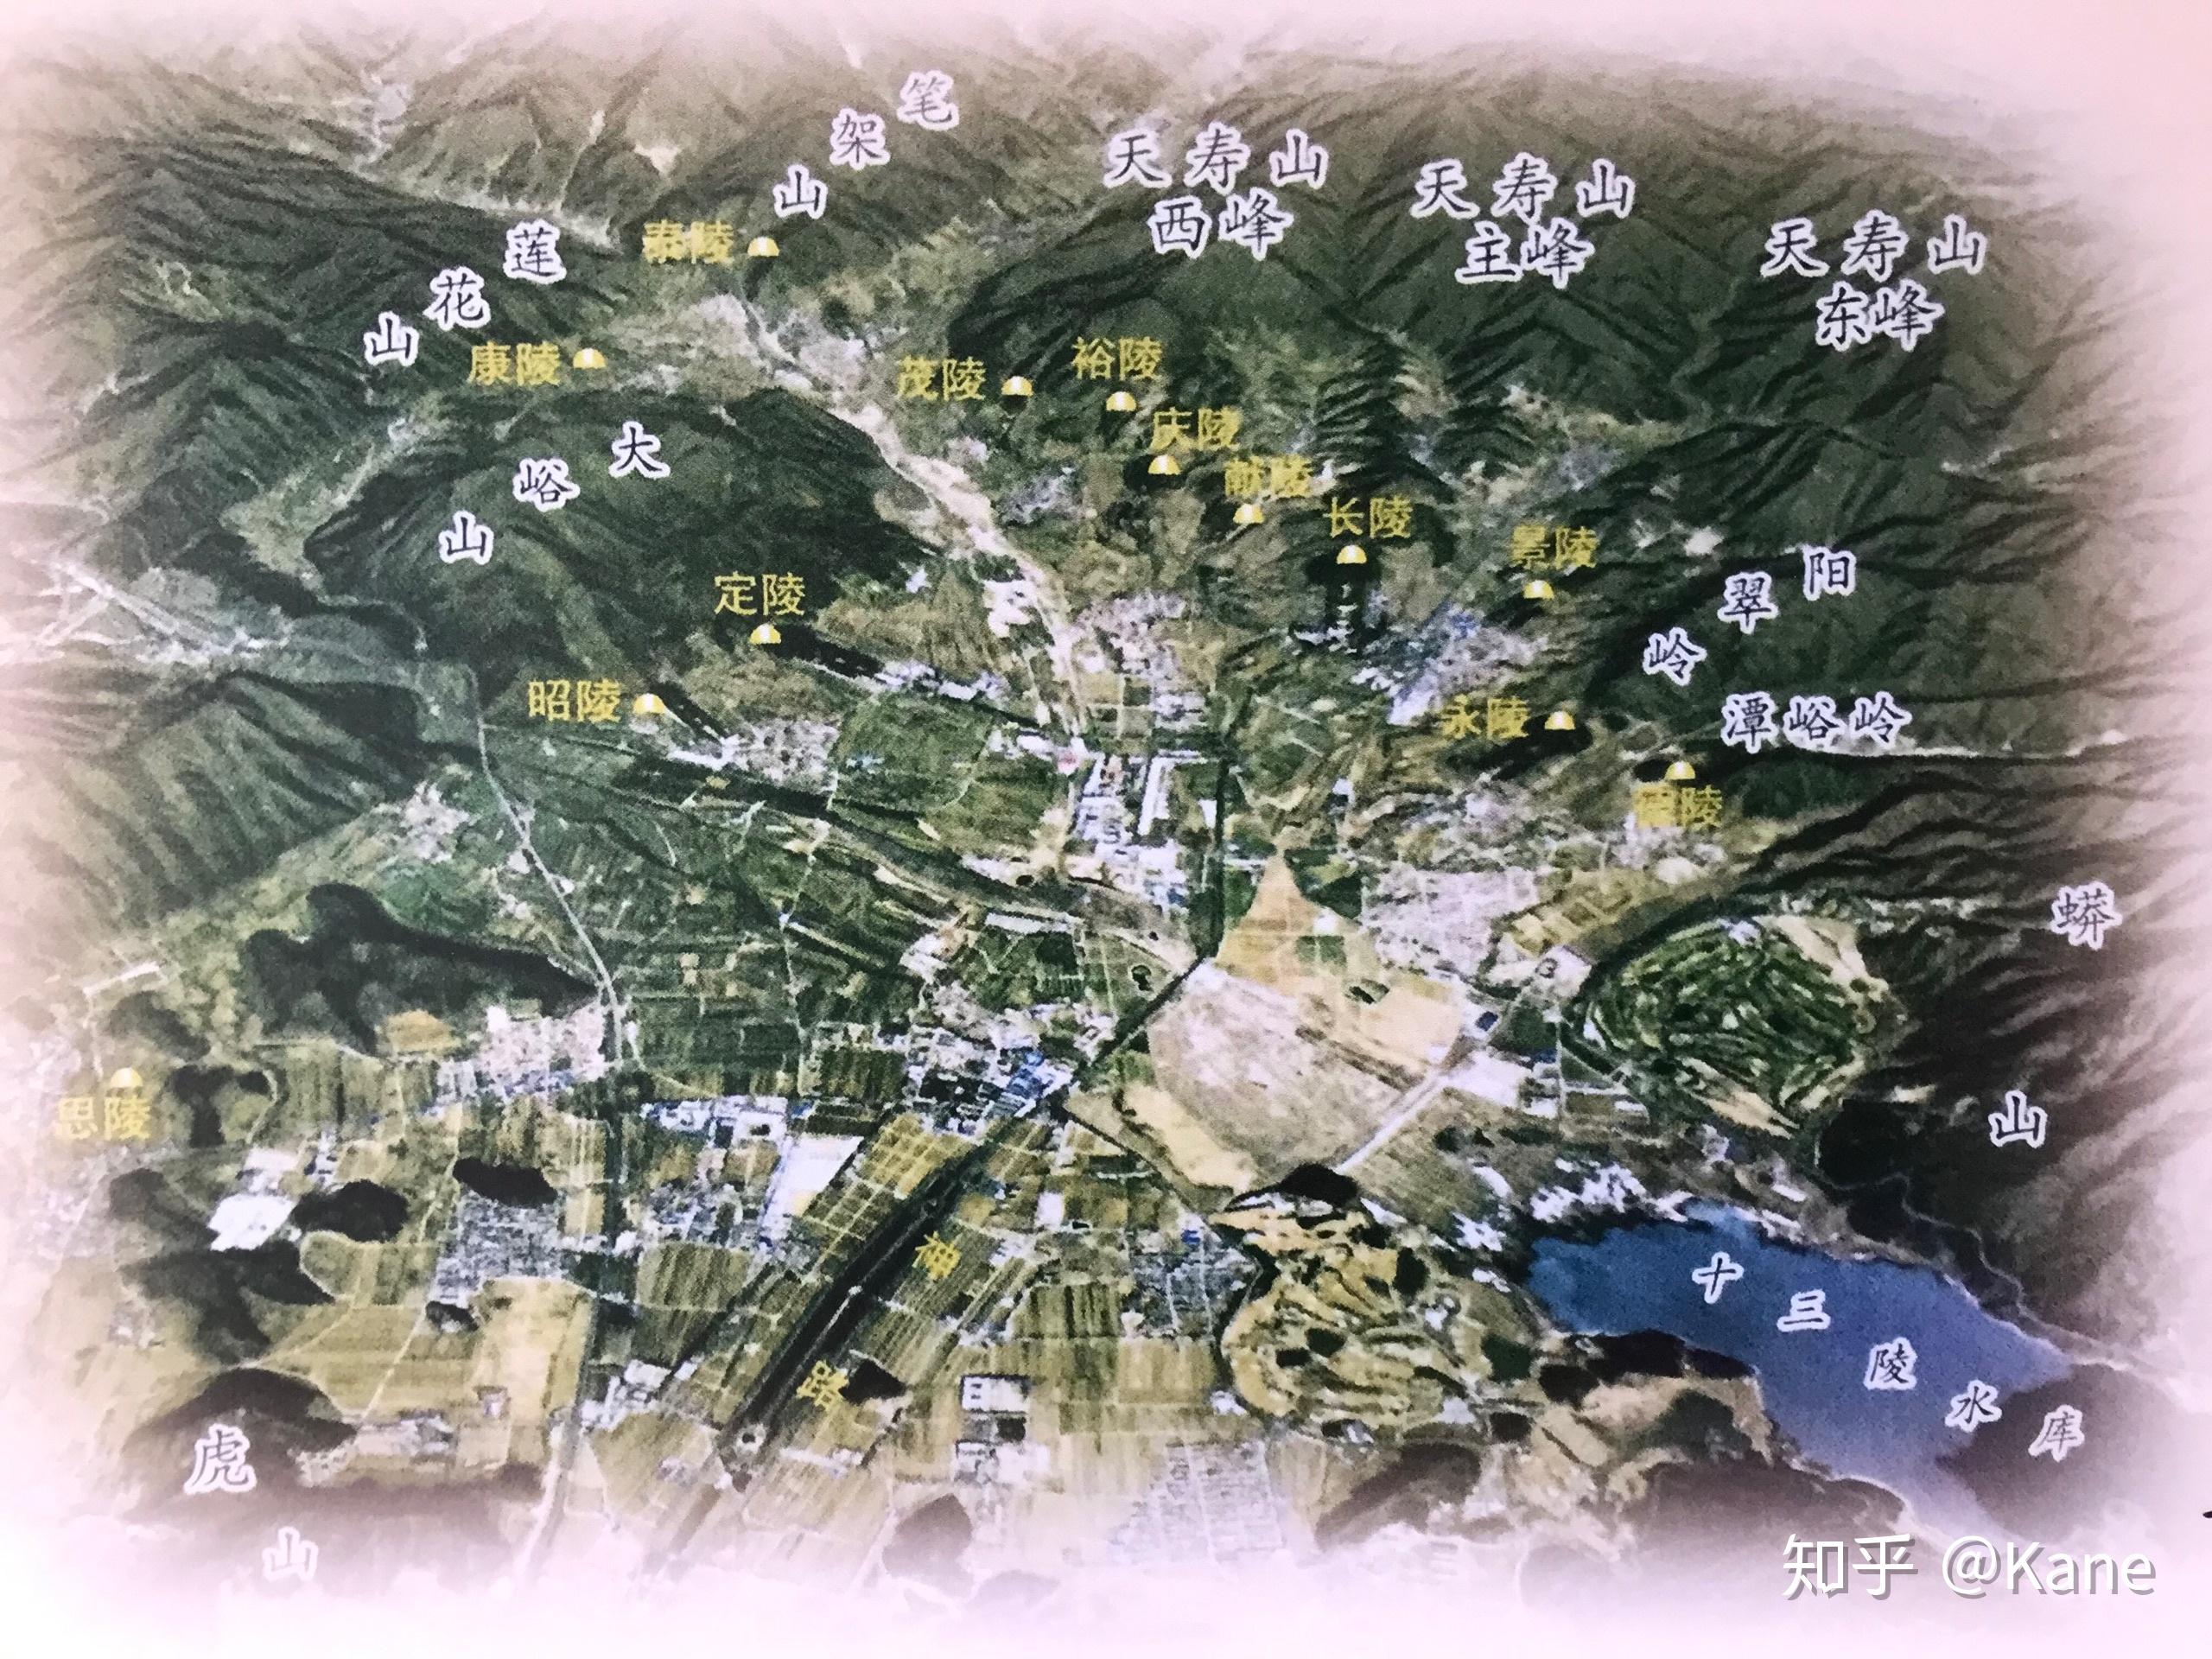 明十三陵全景地图图片